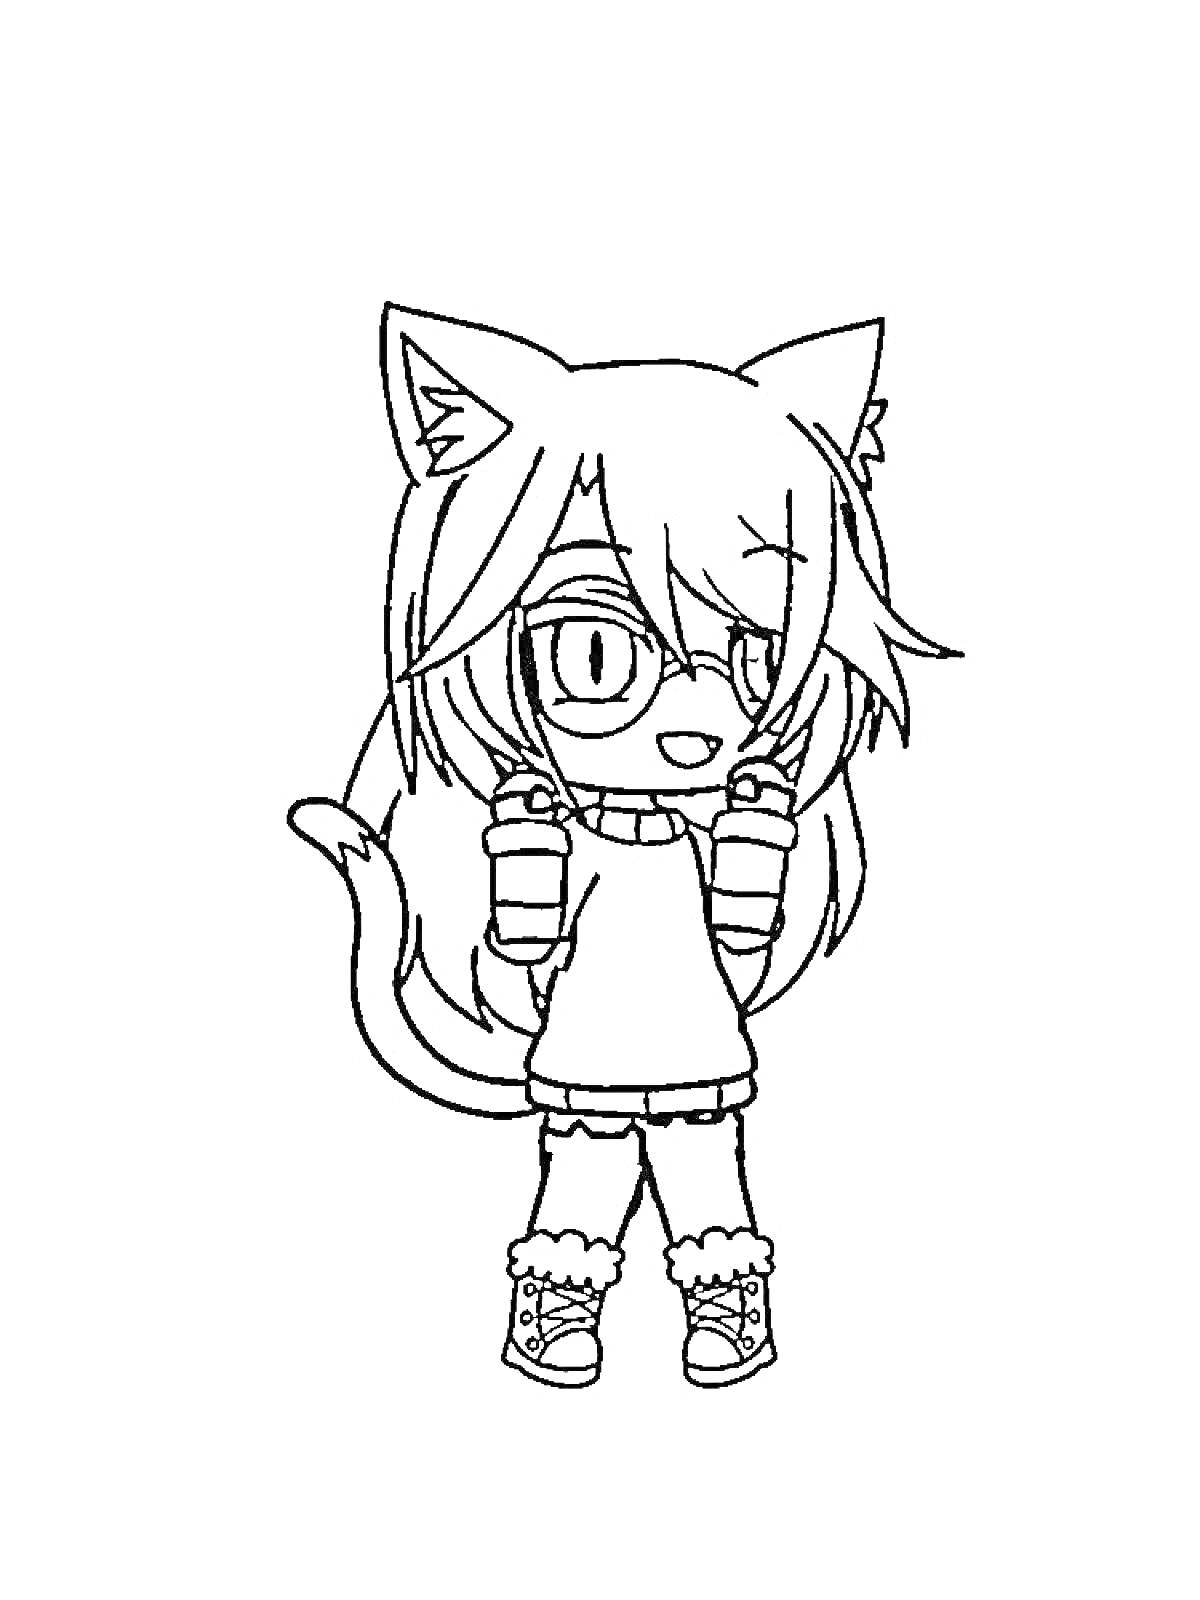 Раскраска Девочка с кошачьими ушками и хвостом в очках и кофте с шарфом